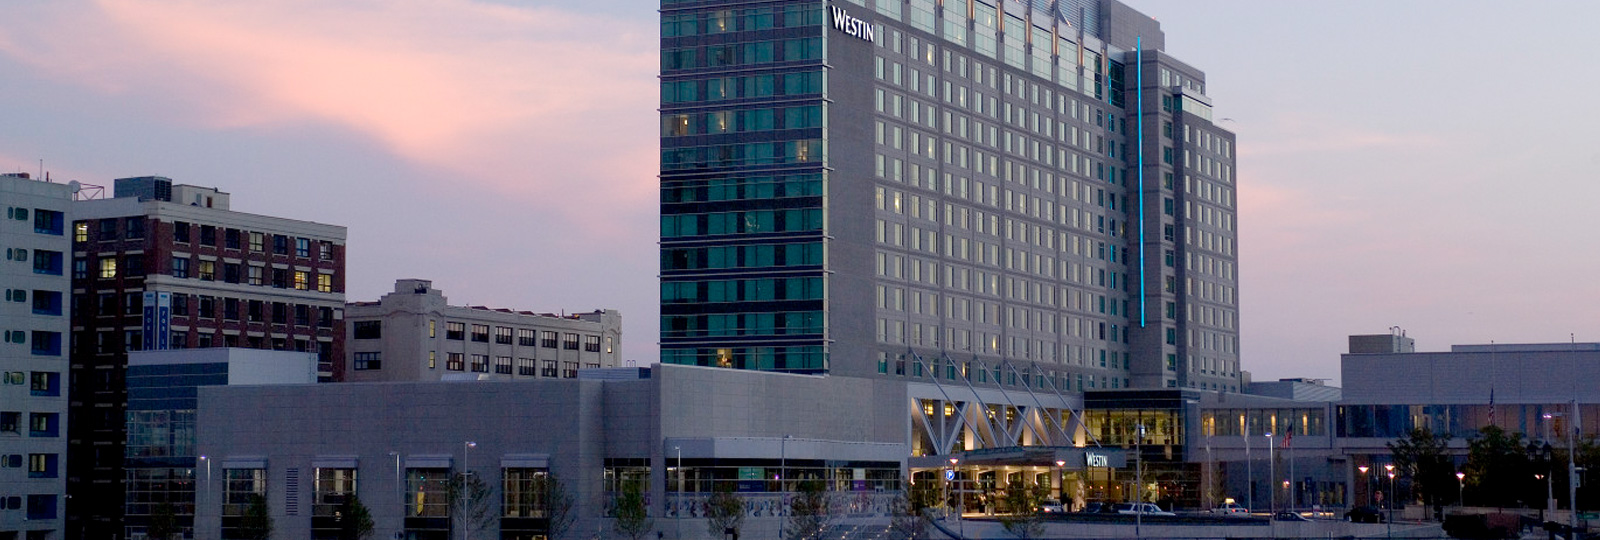 Boston Convention Center Hotel